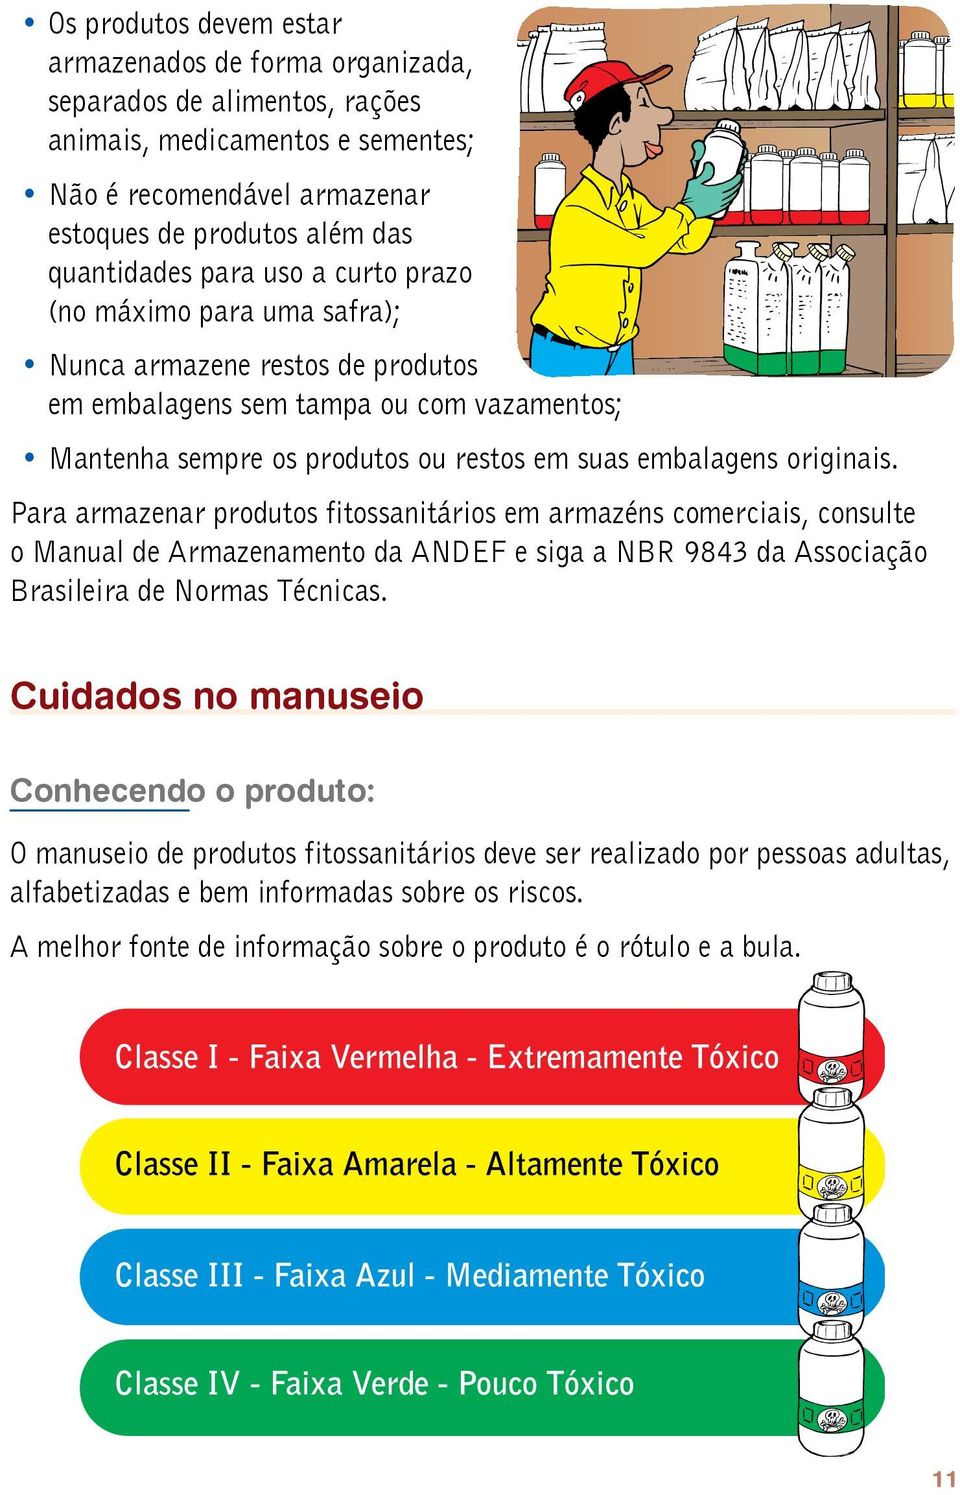 Para armazenar produtos fitossanitários em armazéns comerciais, consulte o Manual de Armazenamento da ANDEF e siga a NBR 9843 da Associação Brasileira de Normas Técnicas.